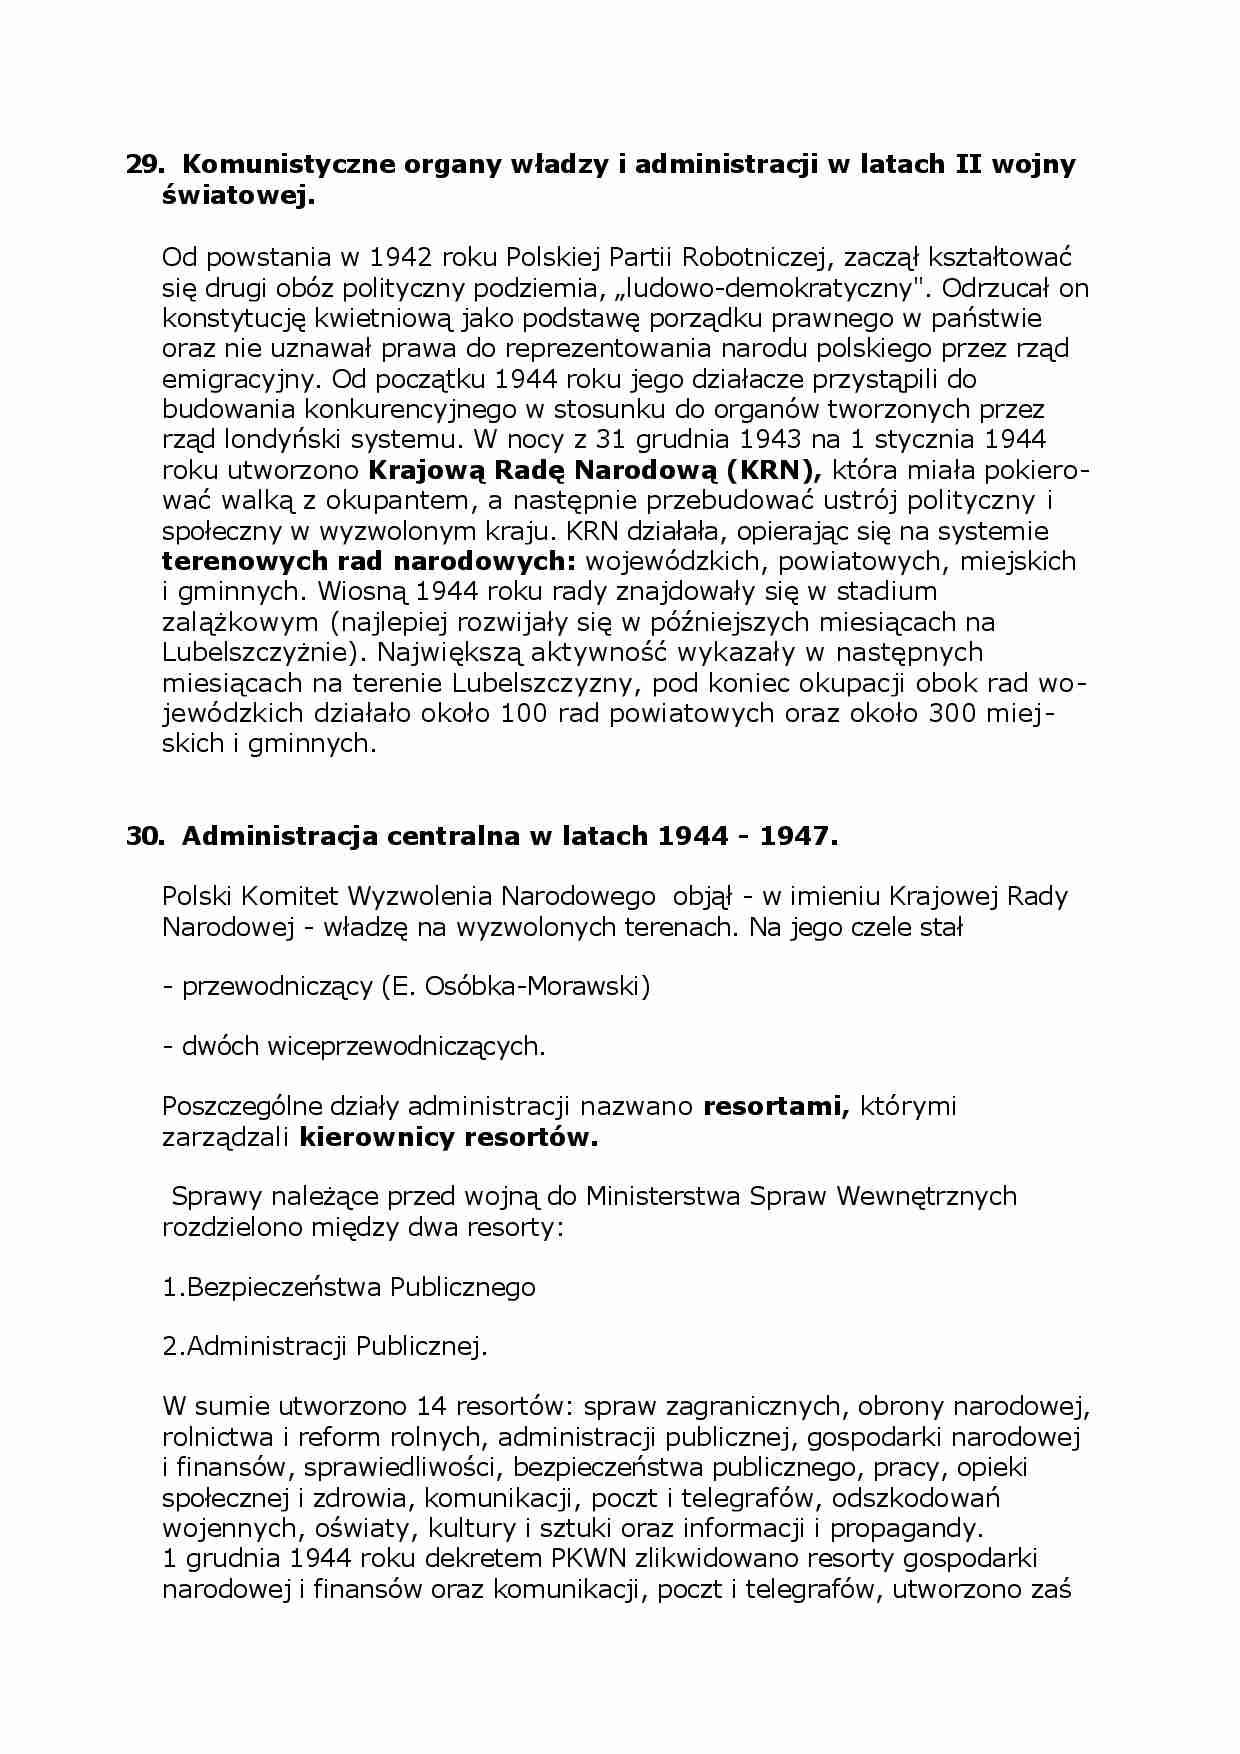 Komunistyczne organy władzy i administracji w latach II wojny światowej - strona 1